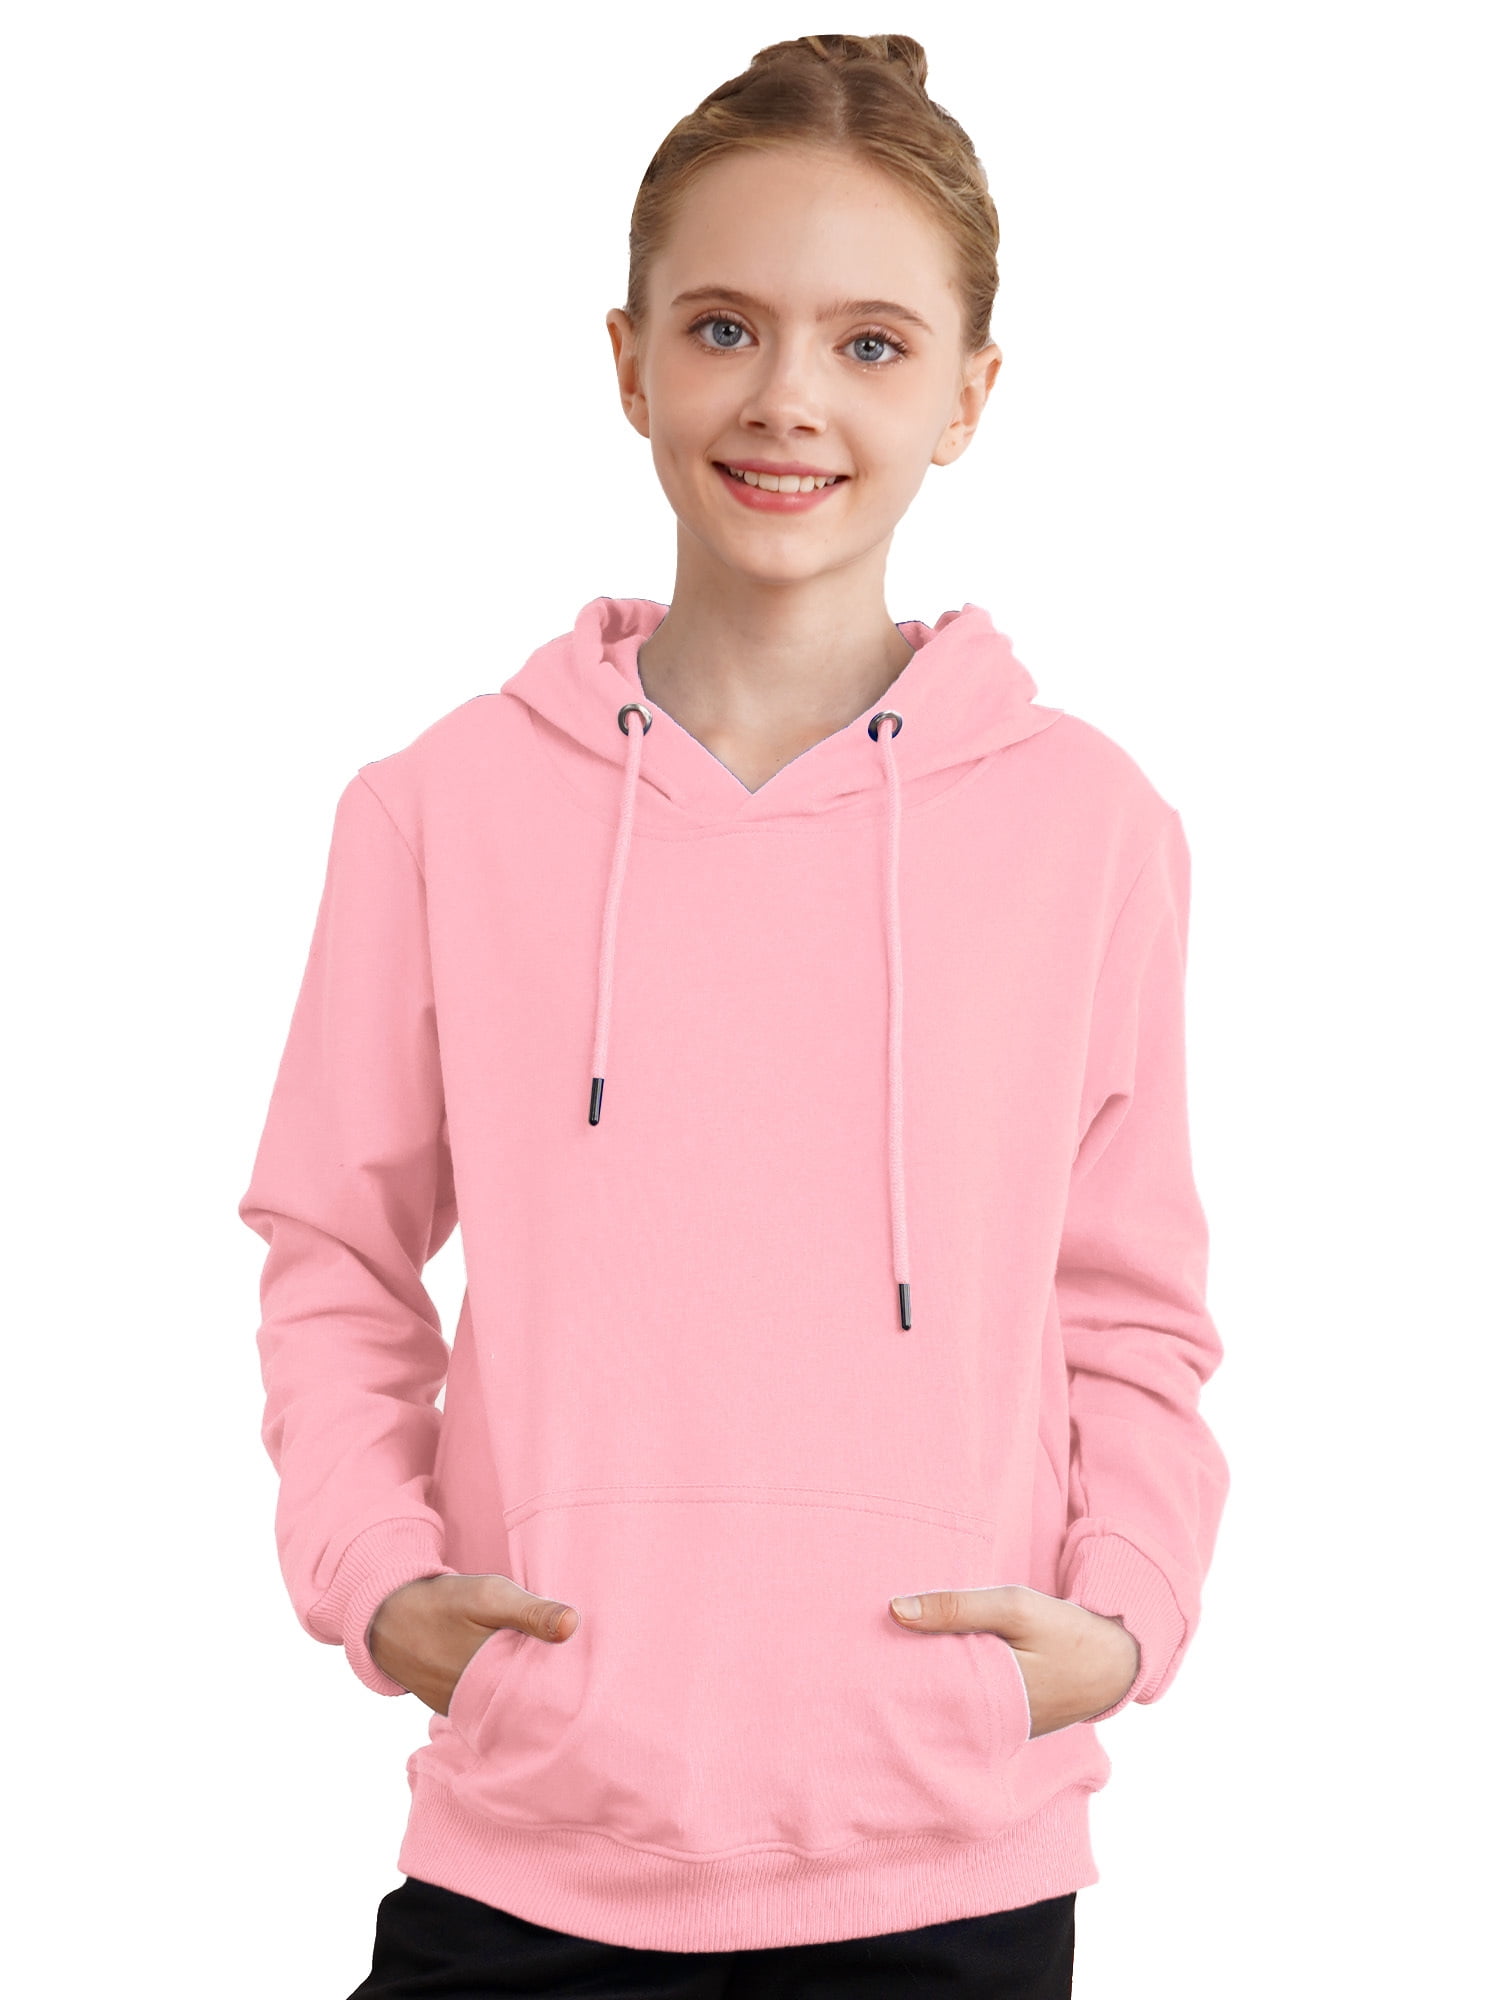 Yeahdor Kids Boys Hoodie Sweatshirt Long Sleeve Drawstring Hooded Pullover  Tops Athletic Shirt Pink 7-8